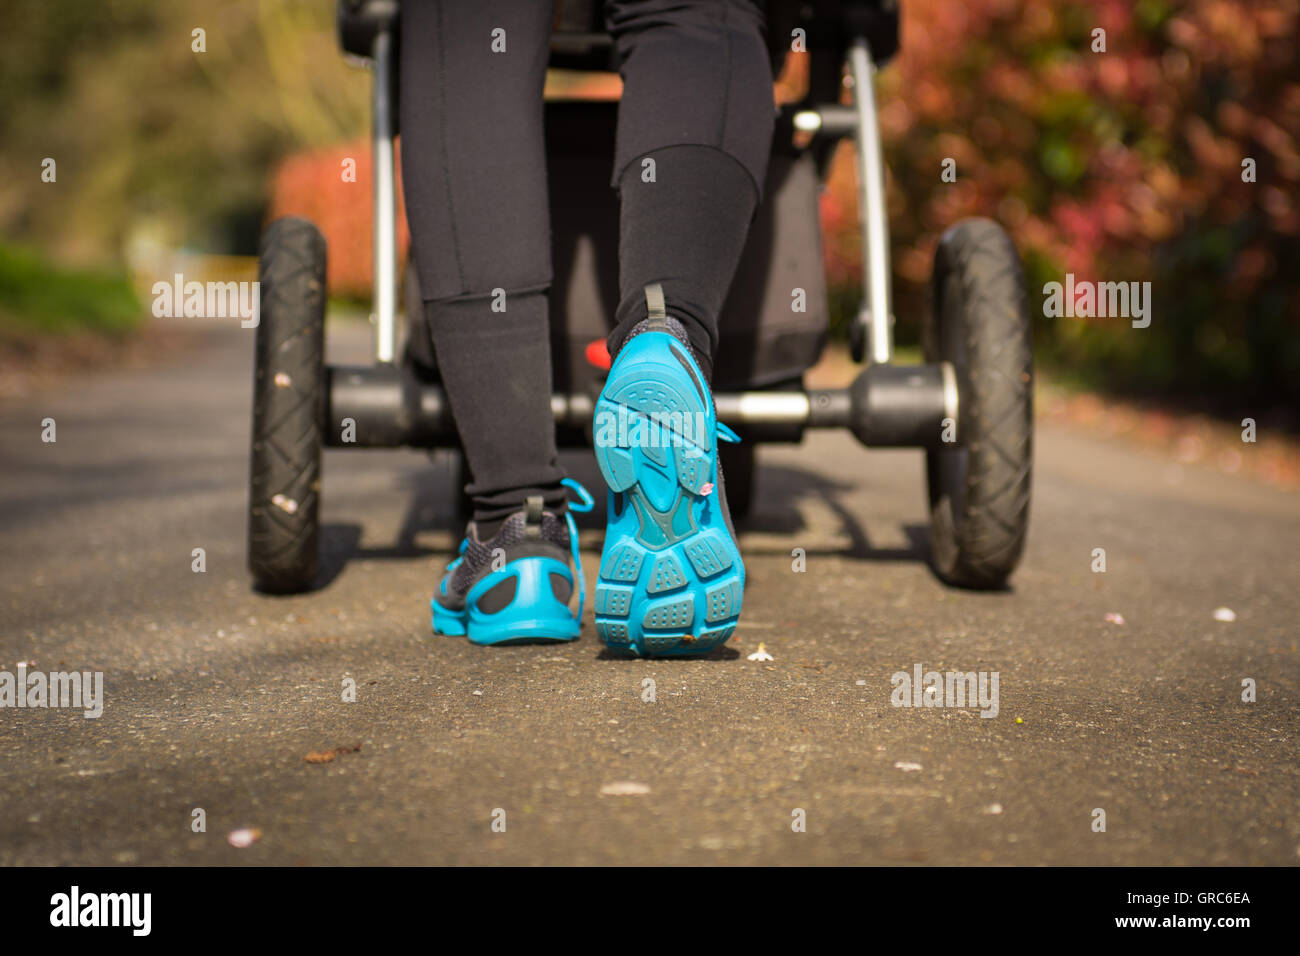 Junge Mutter Übungen in einem Park. Blau-grau Sportschuhe trägt, schiebt einen Kinderwagen Stockfoto